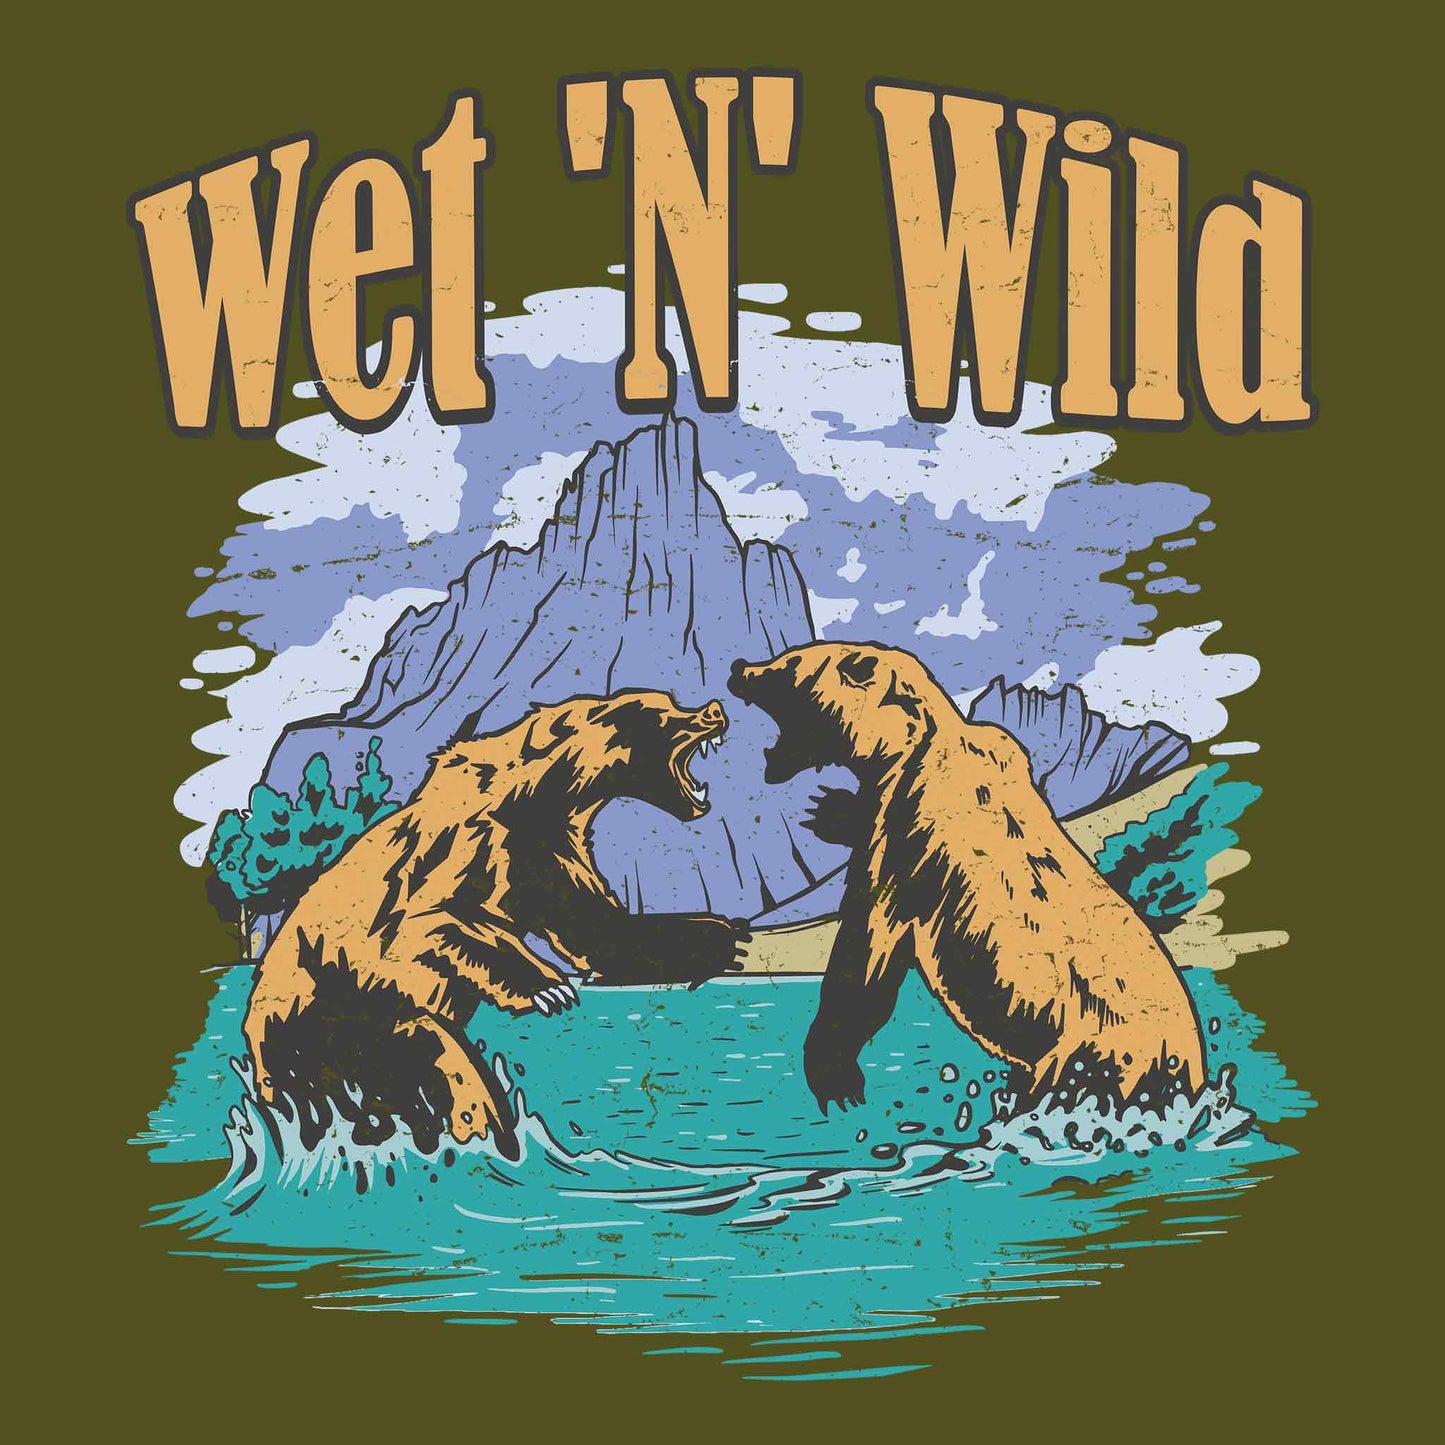 Wet 'N' Wild T-Shirt